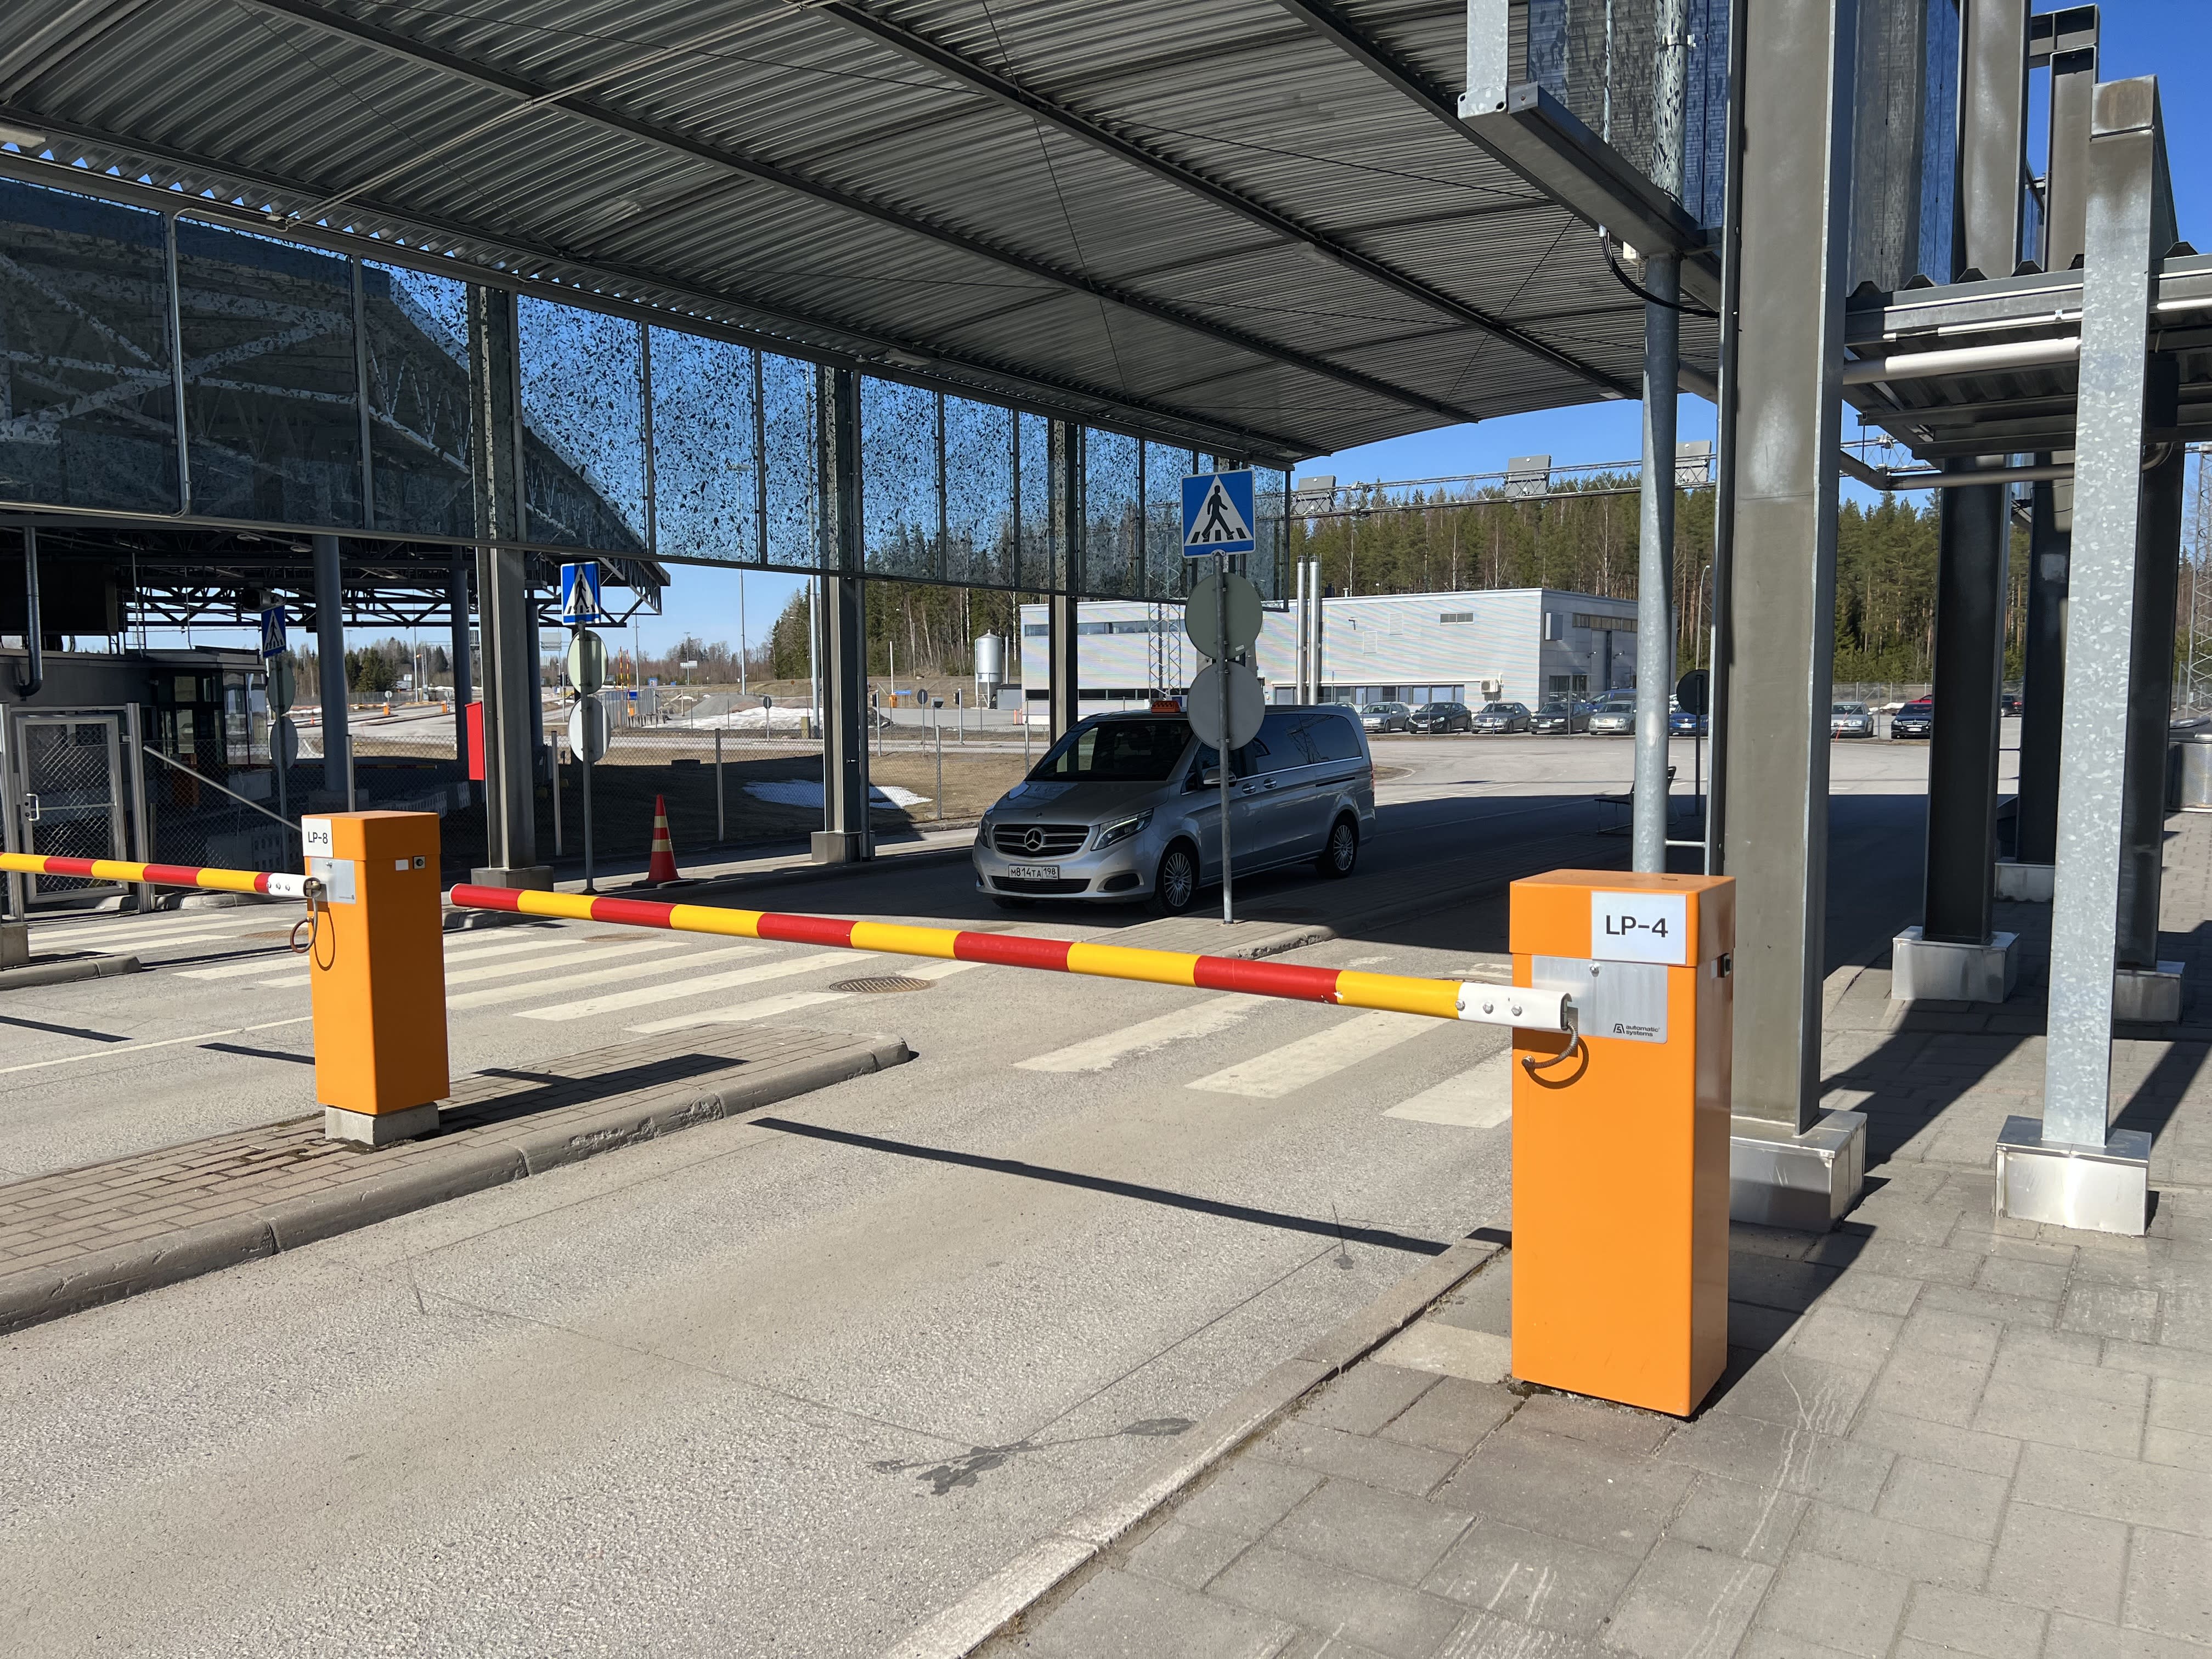 Peraturan insurans akan diubah untuk menjadikannya lebih mahal untuk lintasan sempadan di Finland dan Rusia